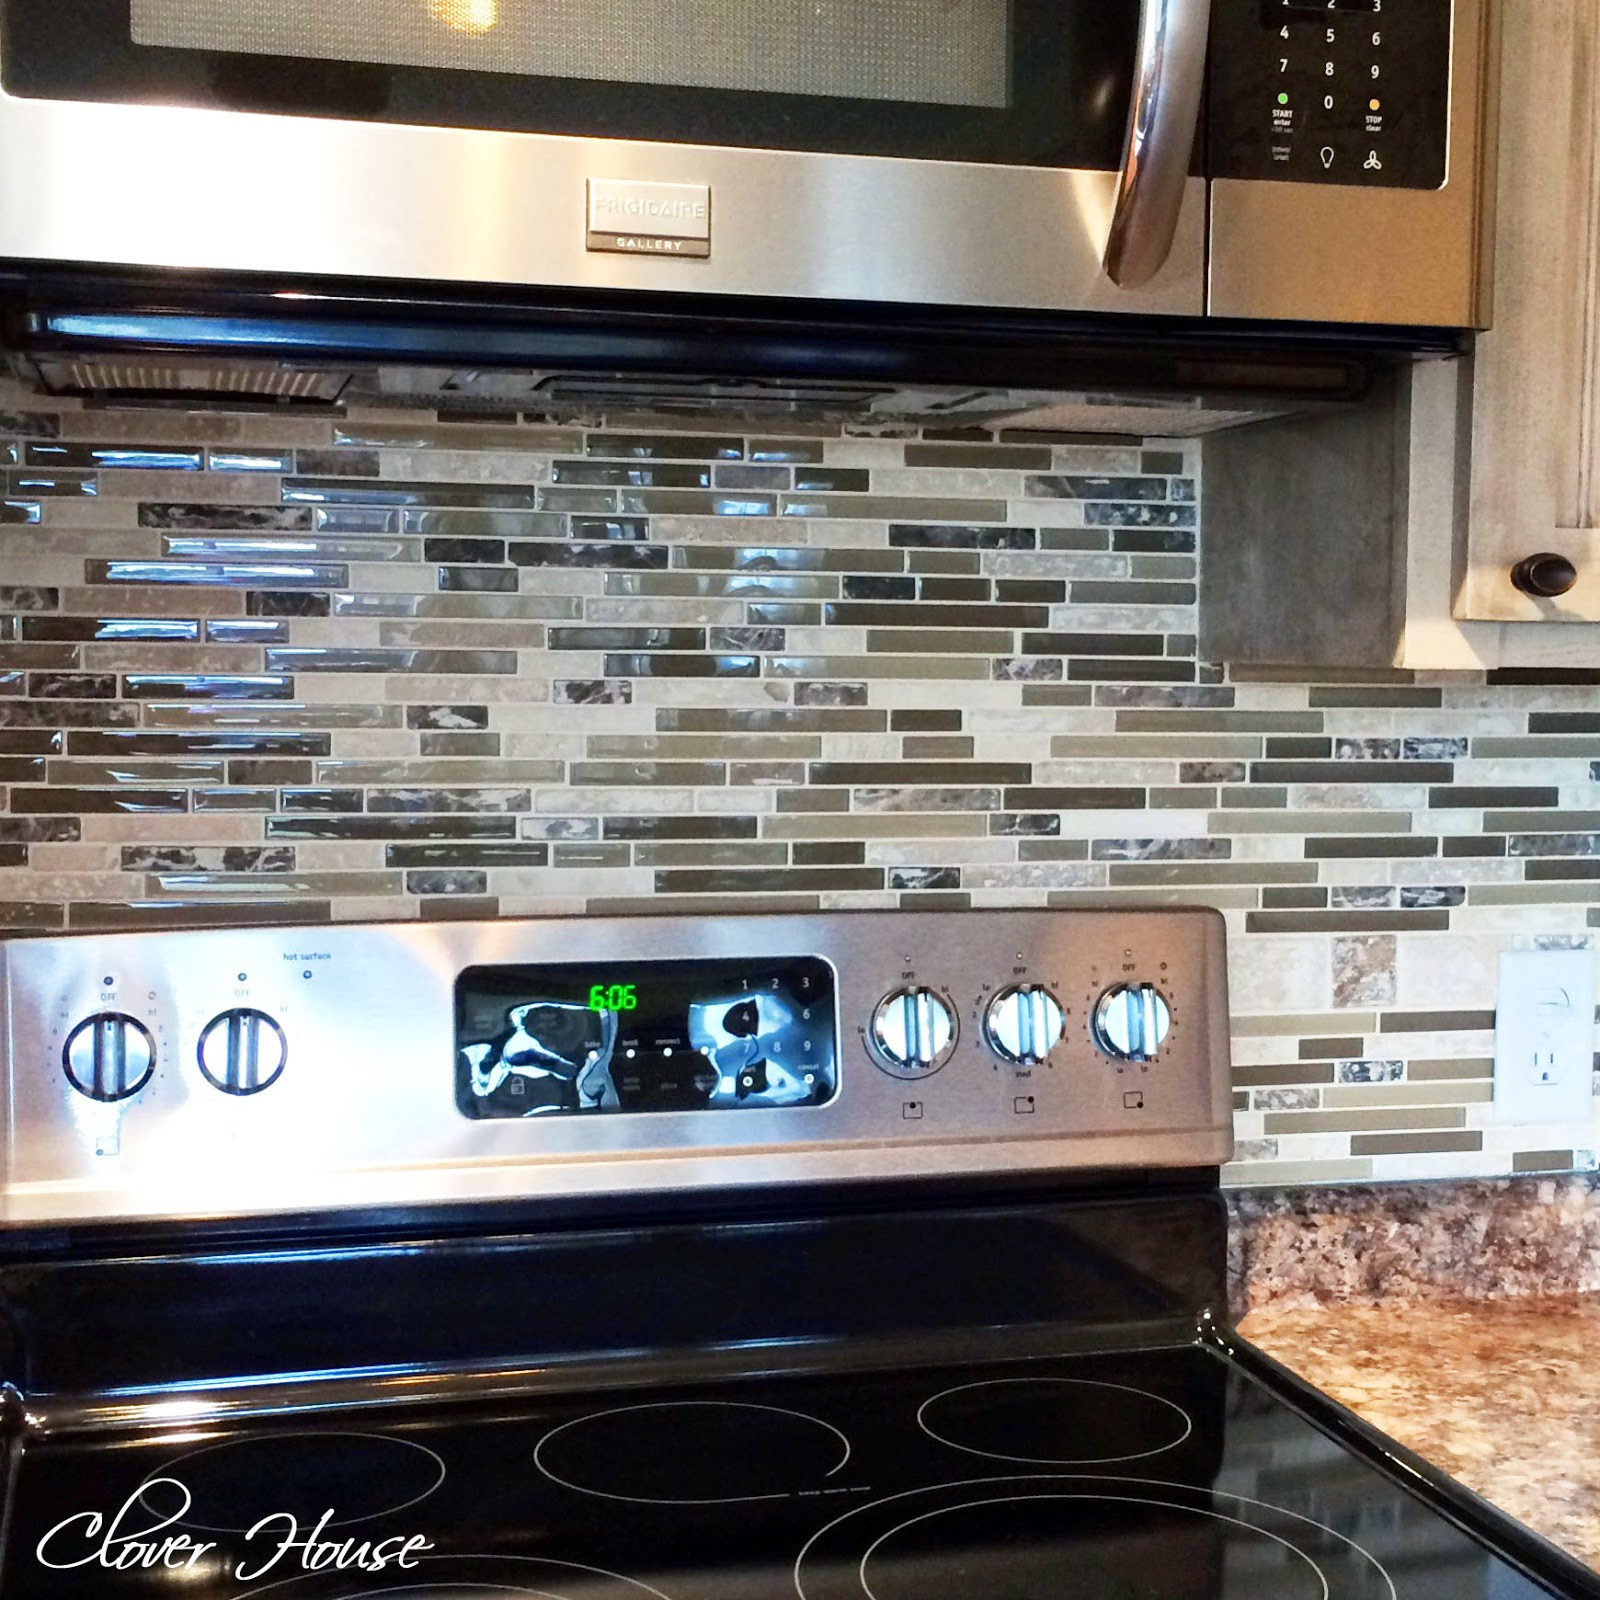 Best ideas about Kitchen Backsplash DIY
. Save or Pin Clover House DIY Mosaic Tile Backsplash Now.